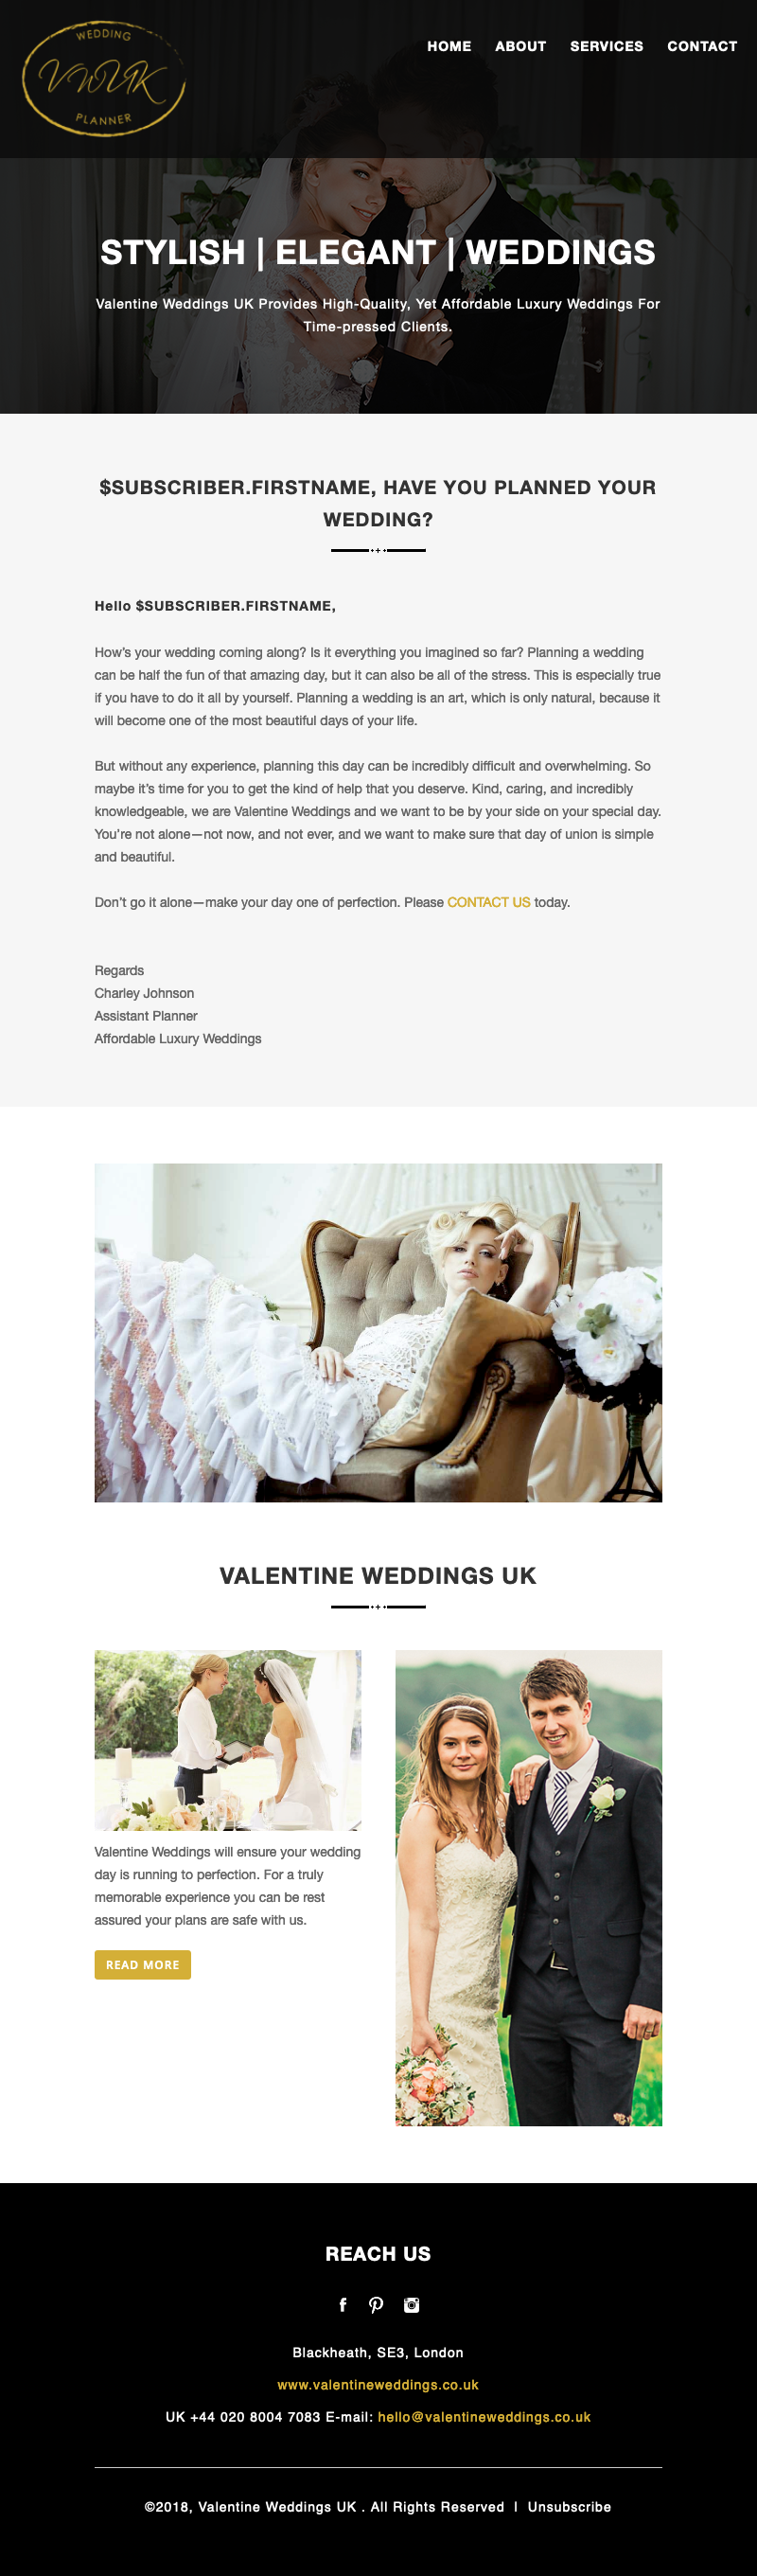 Valentine Wedding - Responsive Email Newsletter Design